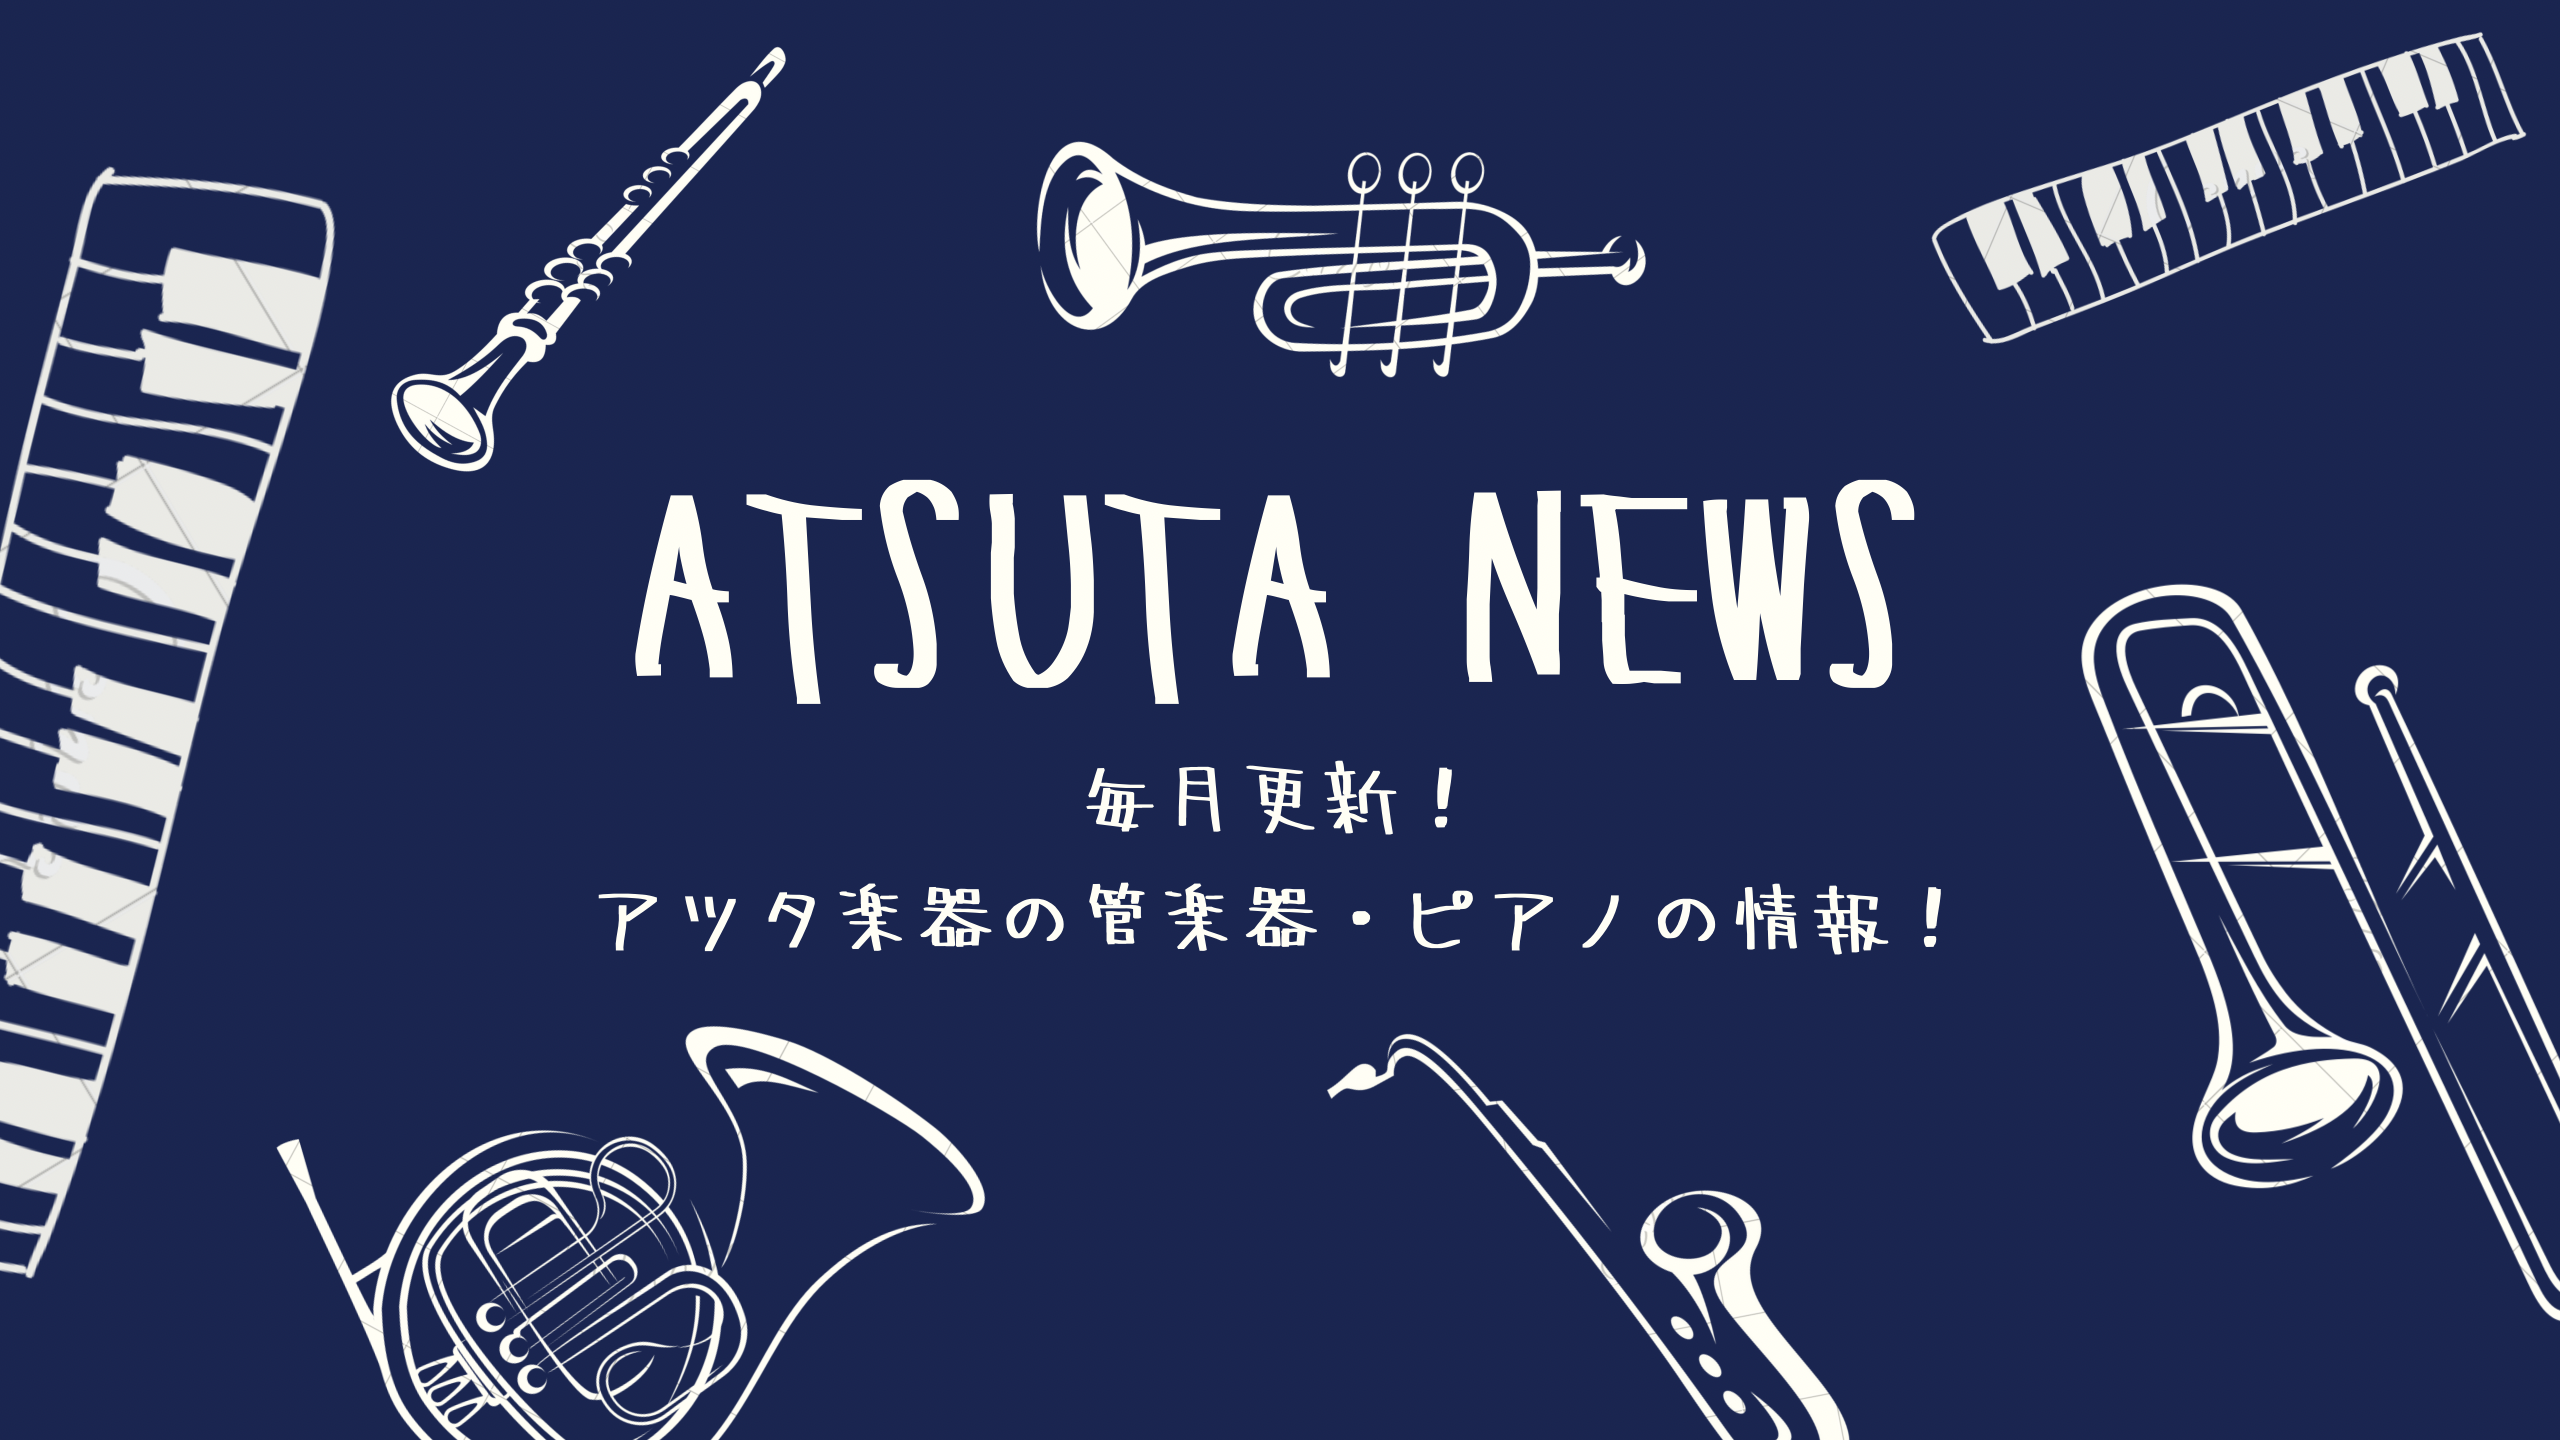 【ATSUTA NEWS Vol.5】